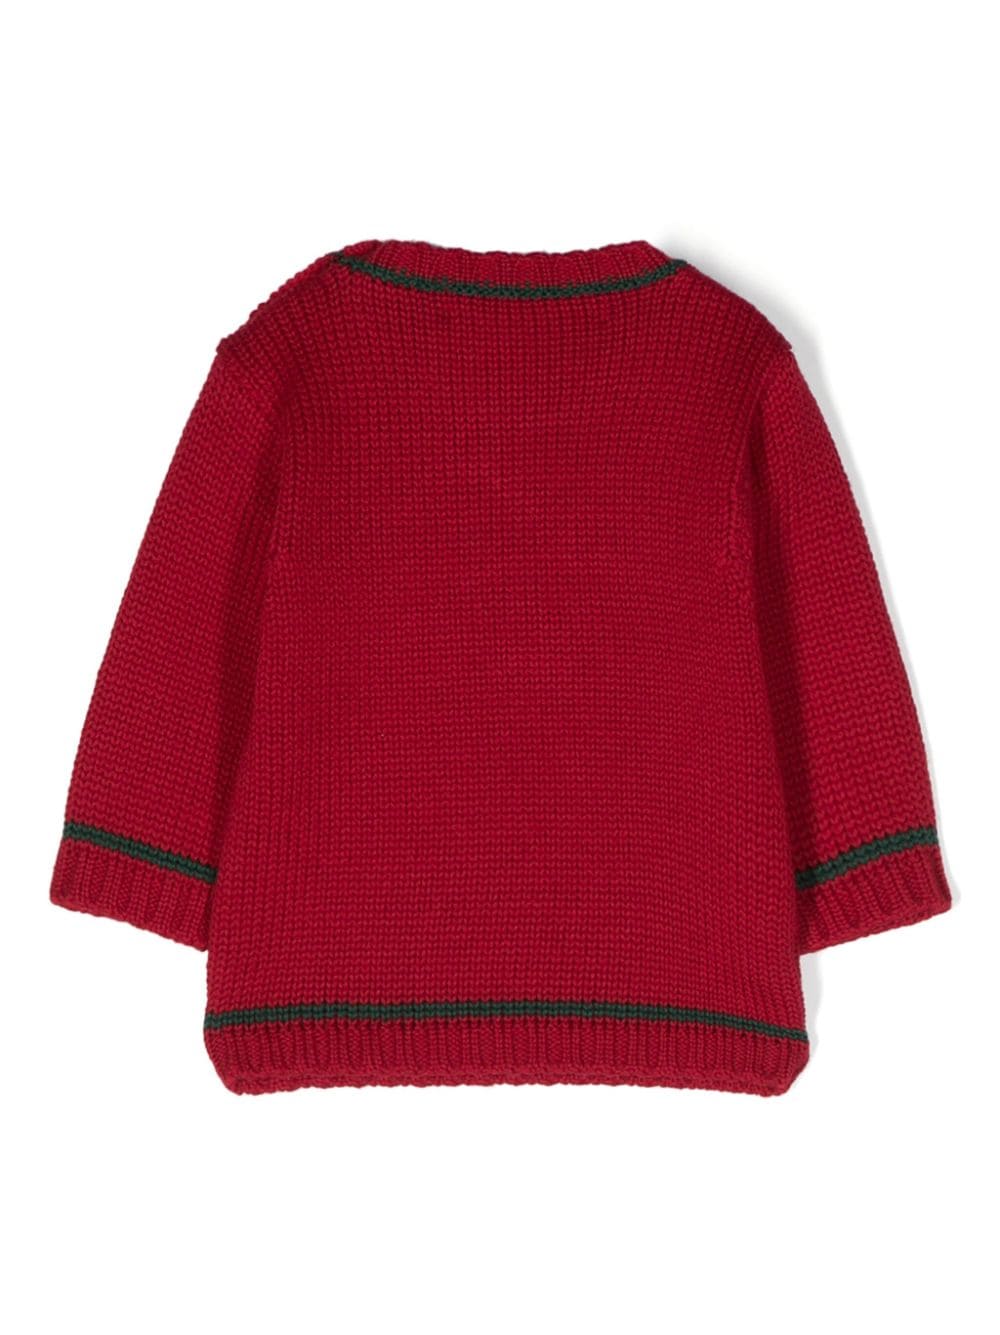 Ho Ho Ho embroidered cashwool sweater